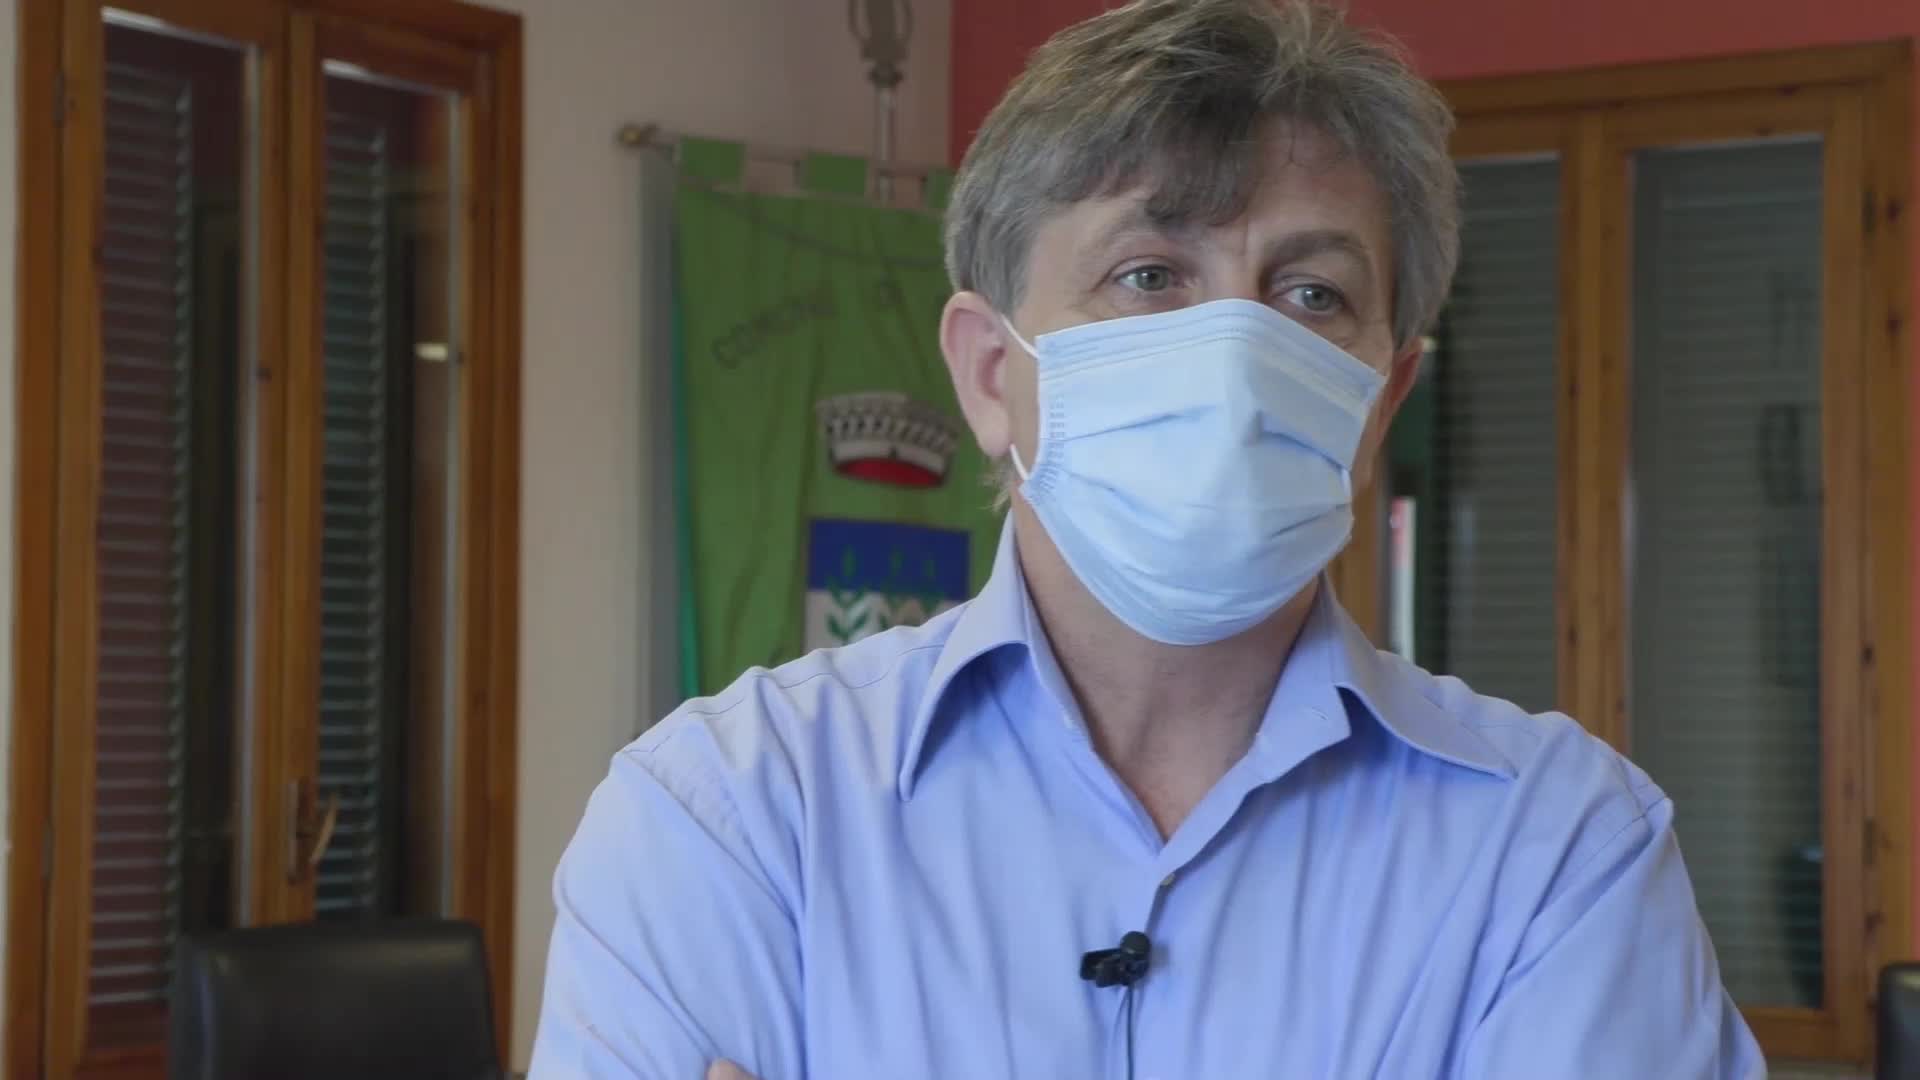 Il sindaco di Cisliano sospende i test sierologici: "Ma non molliamo, andremo avanti"